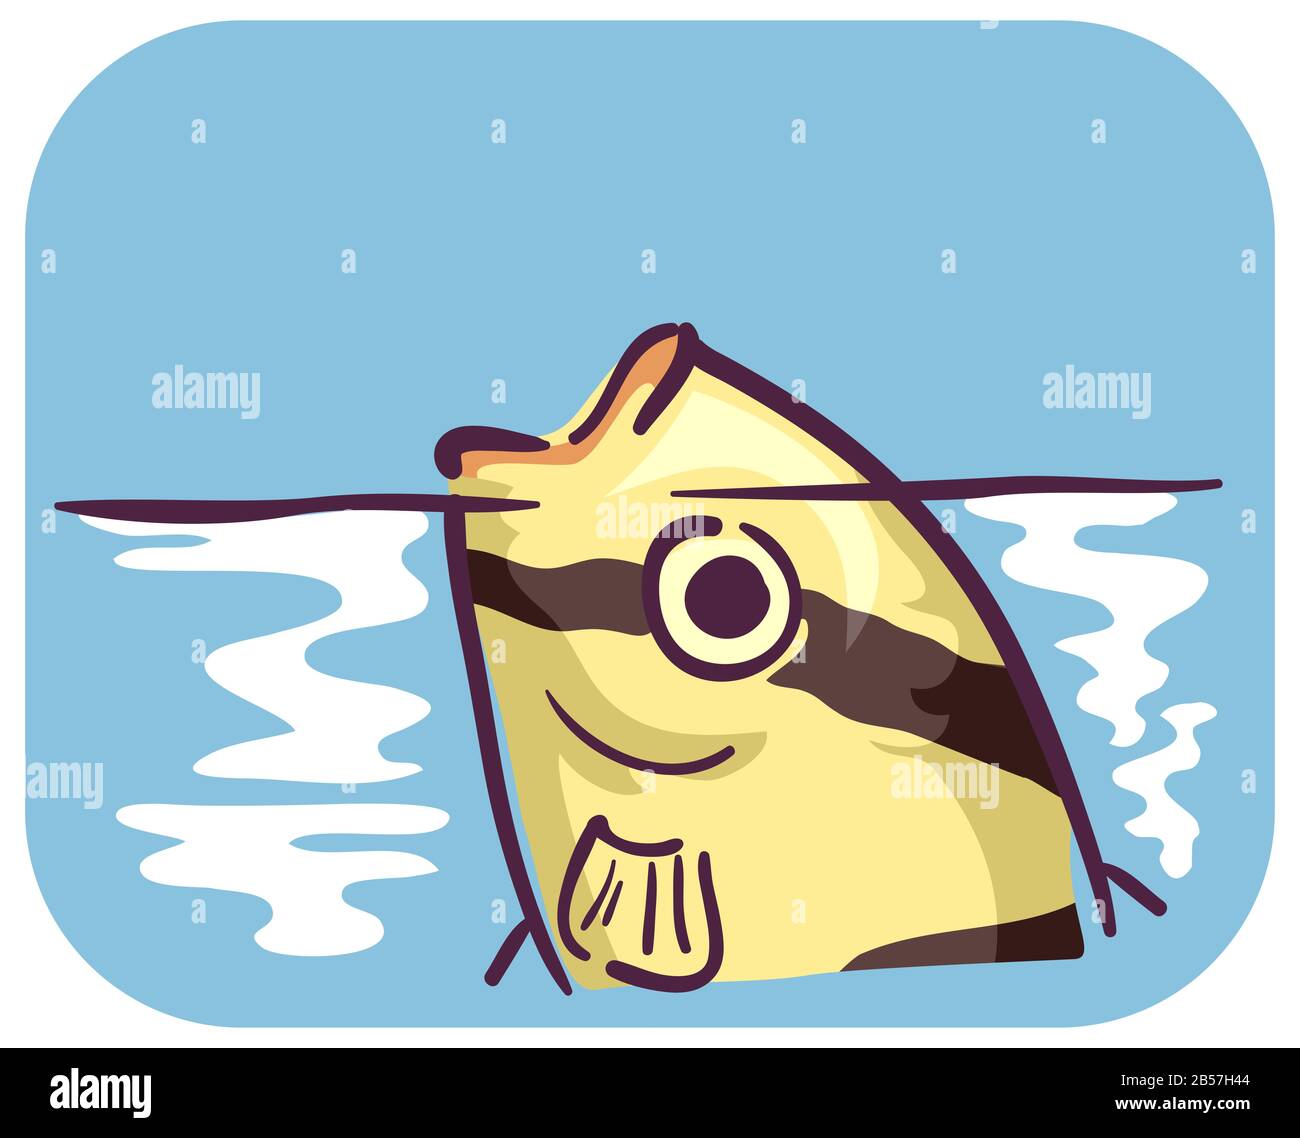 Abbildung: Ein Barbfisch, Der Häufig Aufatmet und An Der Oberfläche Nach Luft Schnappen Kann, Da Er Einen Hohen Sauerstoffgehalt aufweist, was zu Stresssymptomen führt Stockfoto